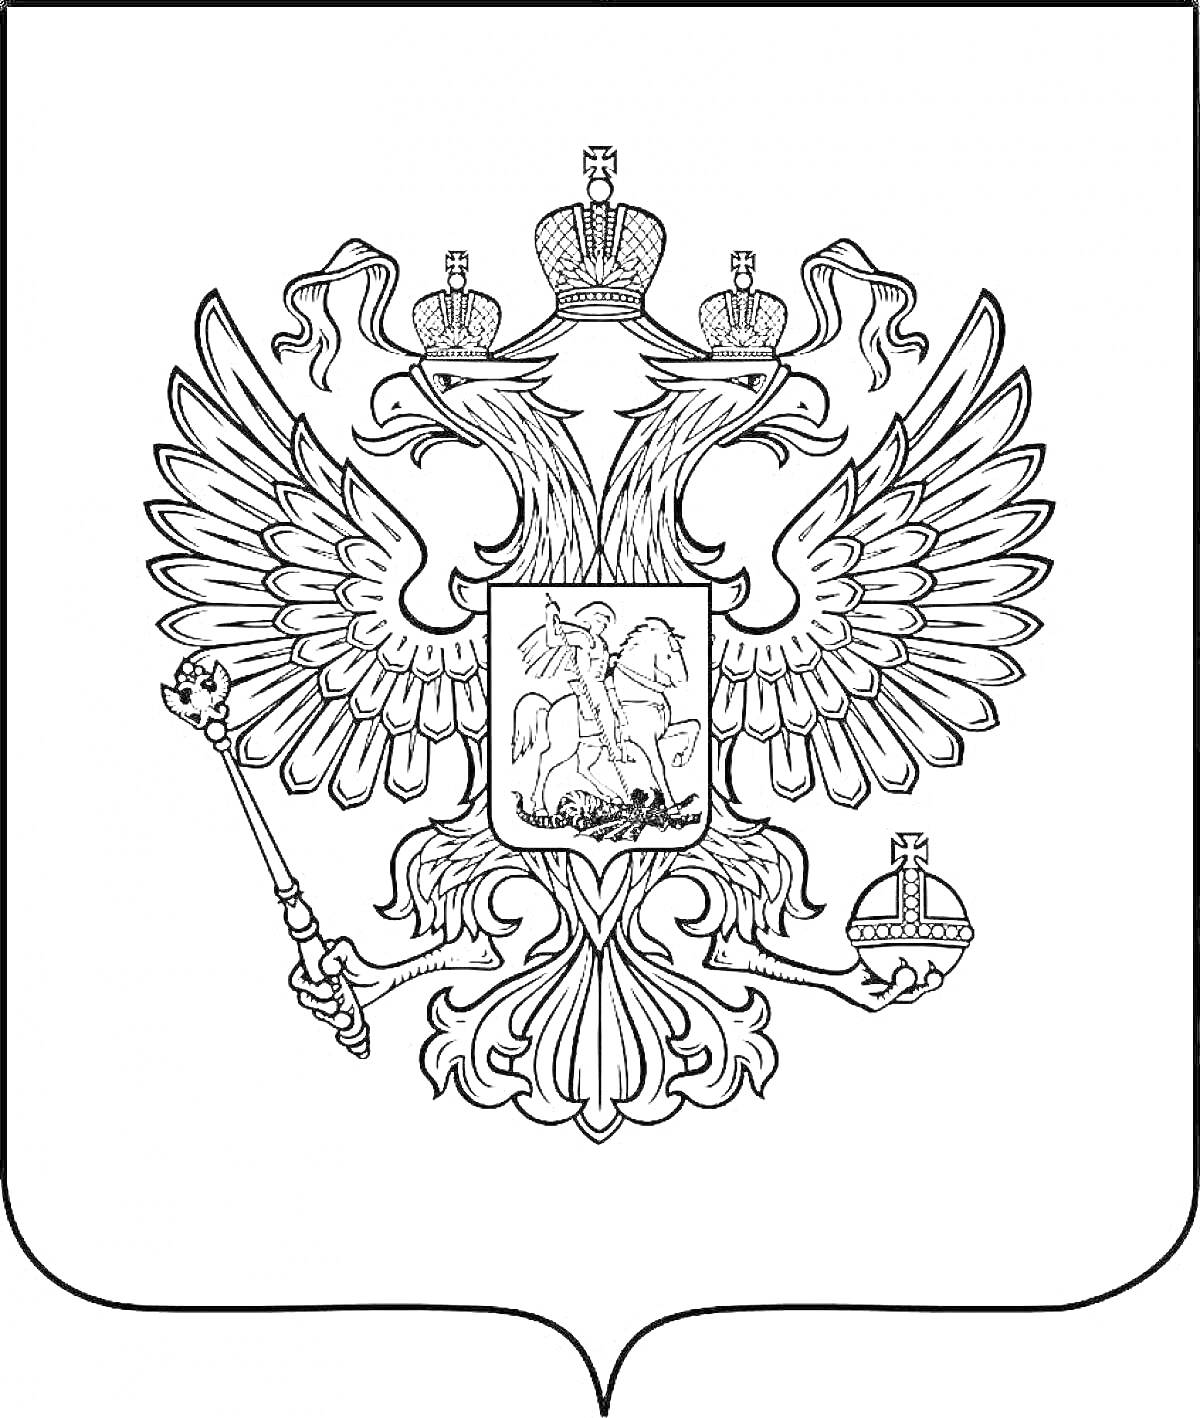 Раскраска Герб Российской Федерации с двуглавым орлом, державой и скипетром, щит с изображением всадника, поражающего змея